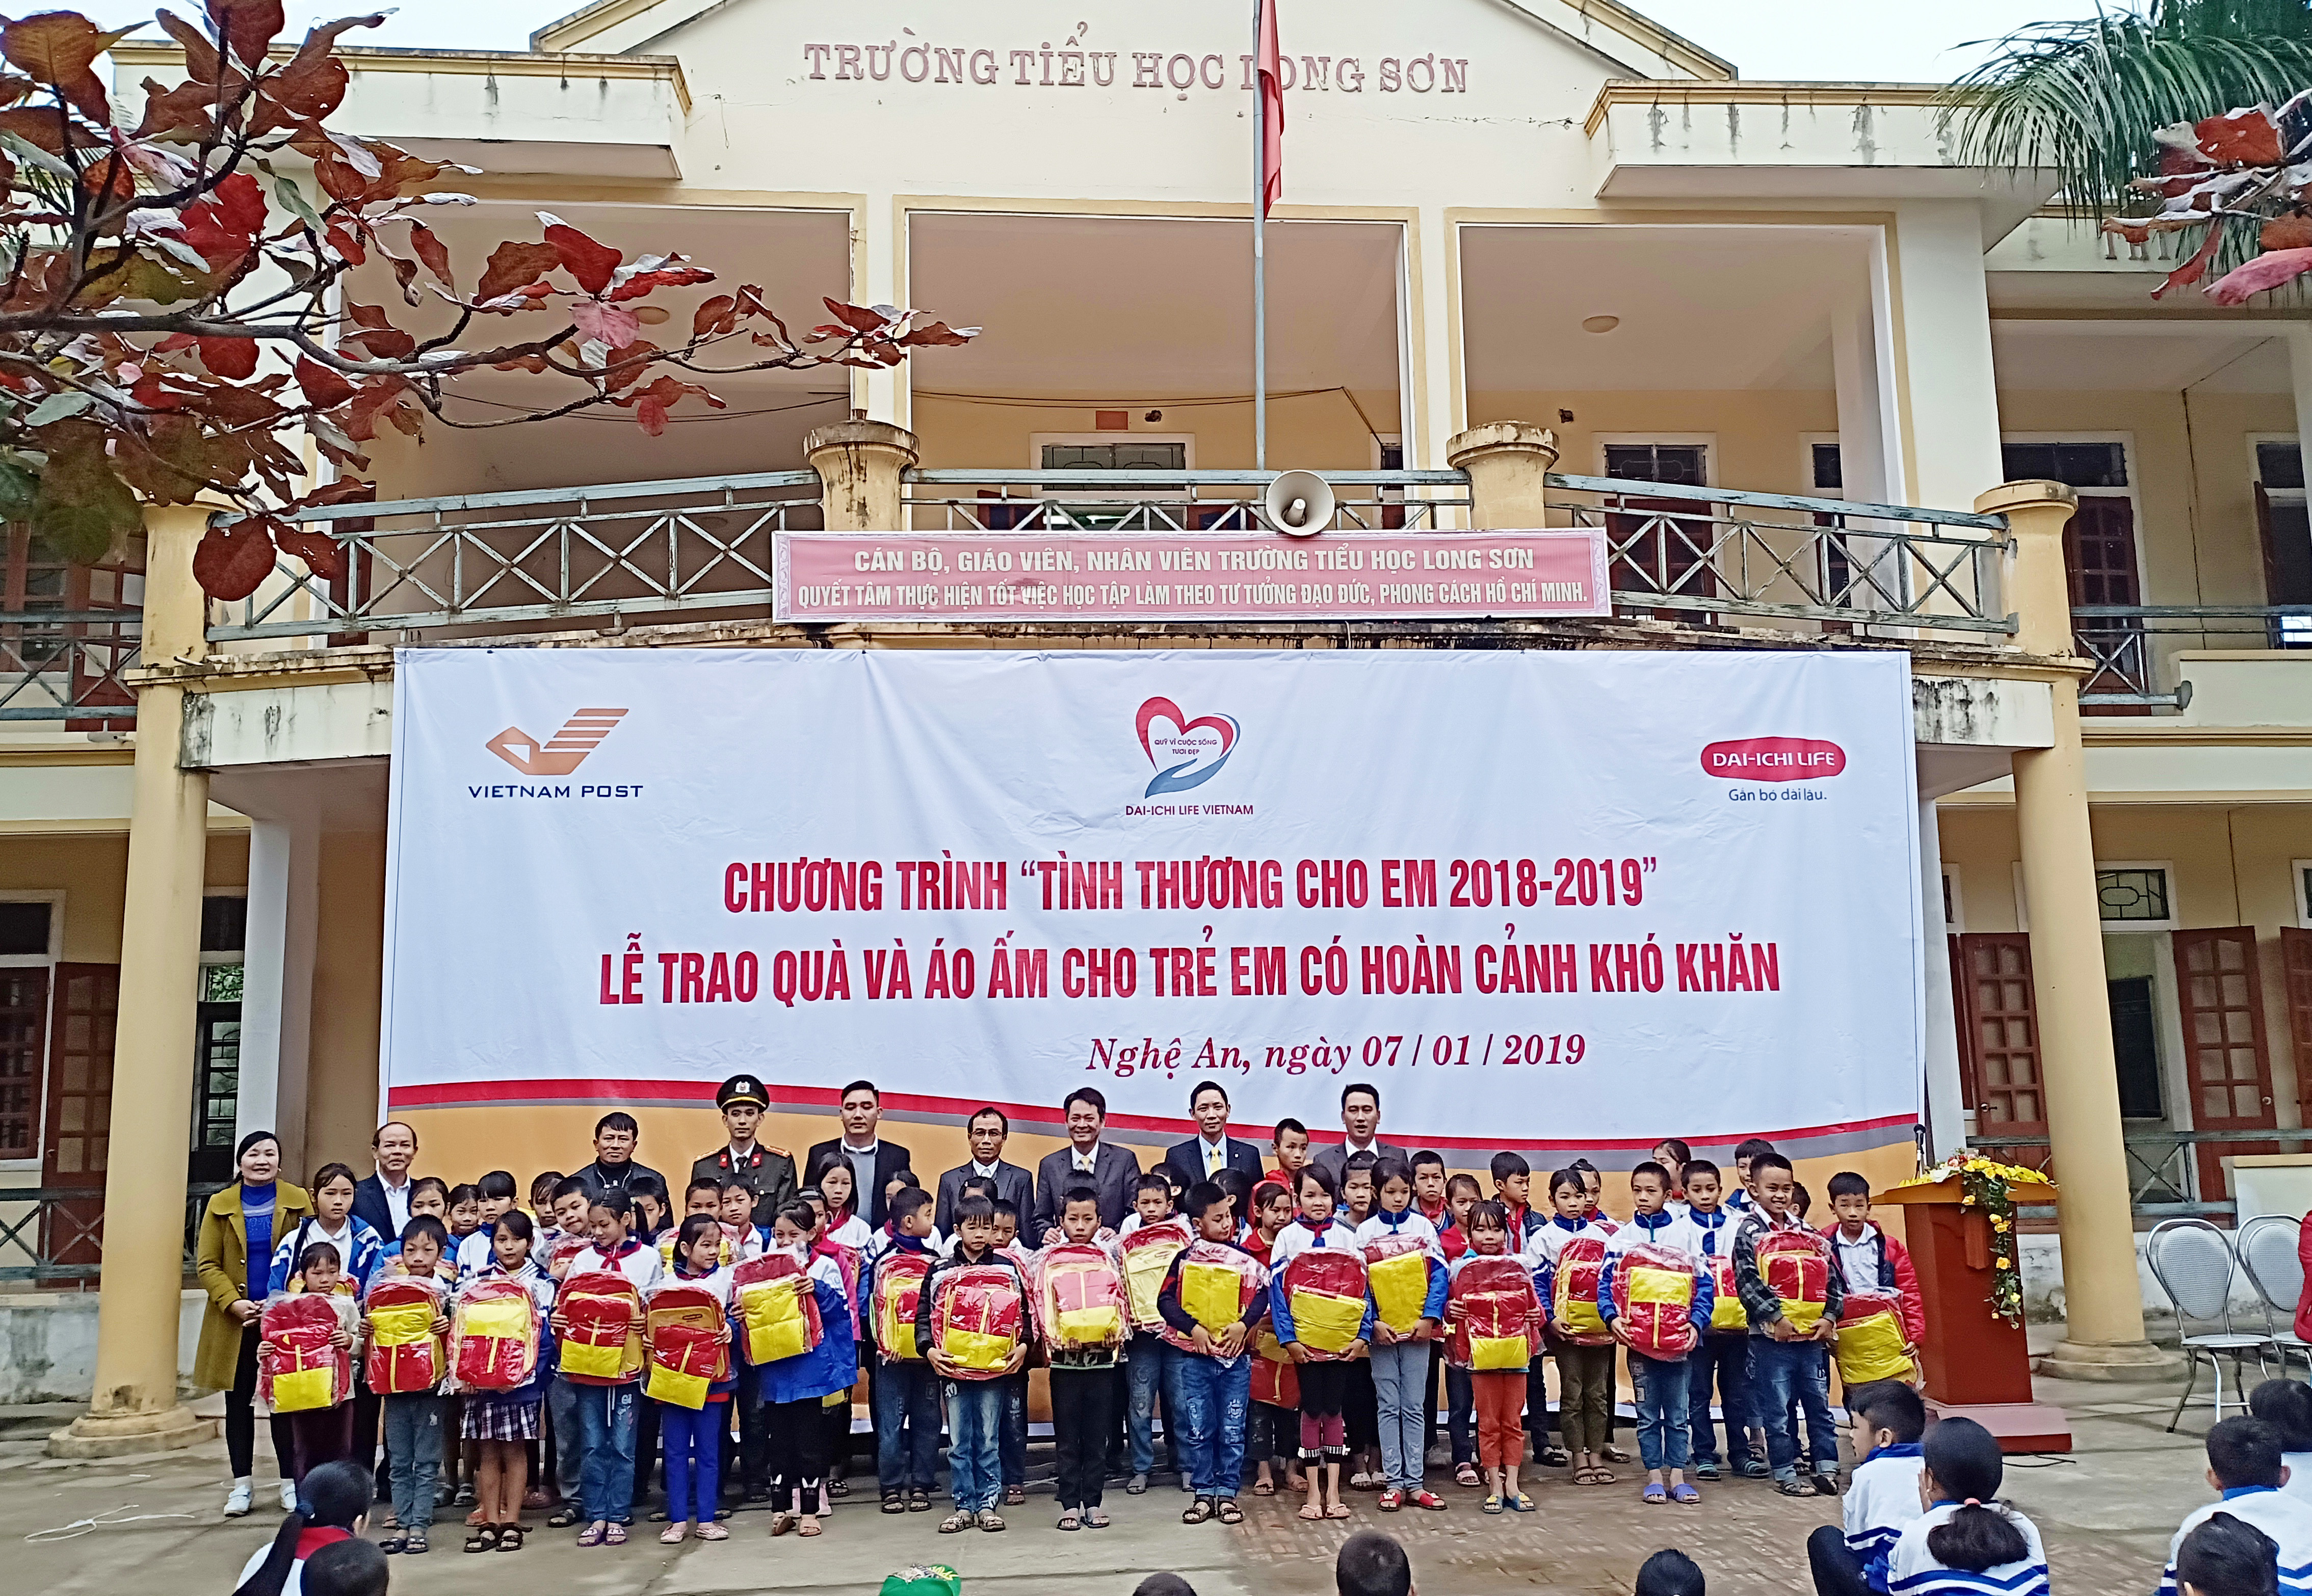 Công ty BHNT Dai-ichi Việt Nam và Bưu điện tỉnh tặng 150 suất quà cho học sinh nghèo ở Trường Tiều học Long Sơn. Ảnh: Thái Hiền 